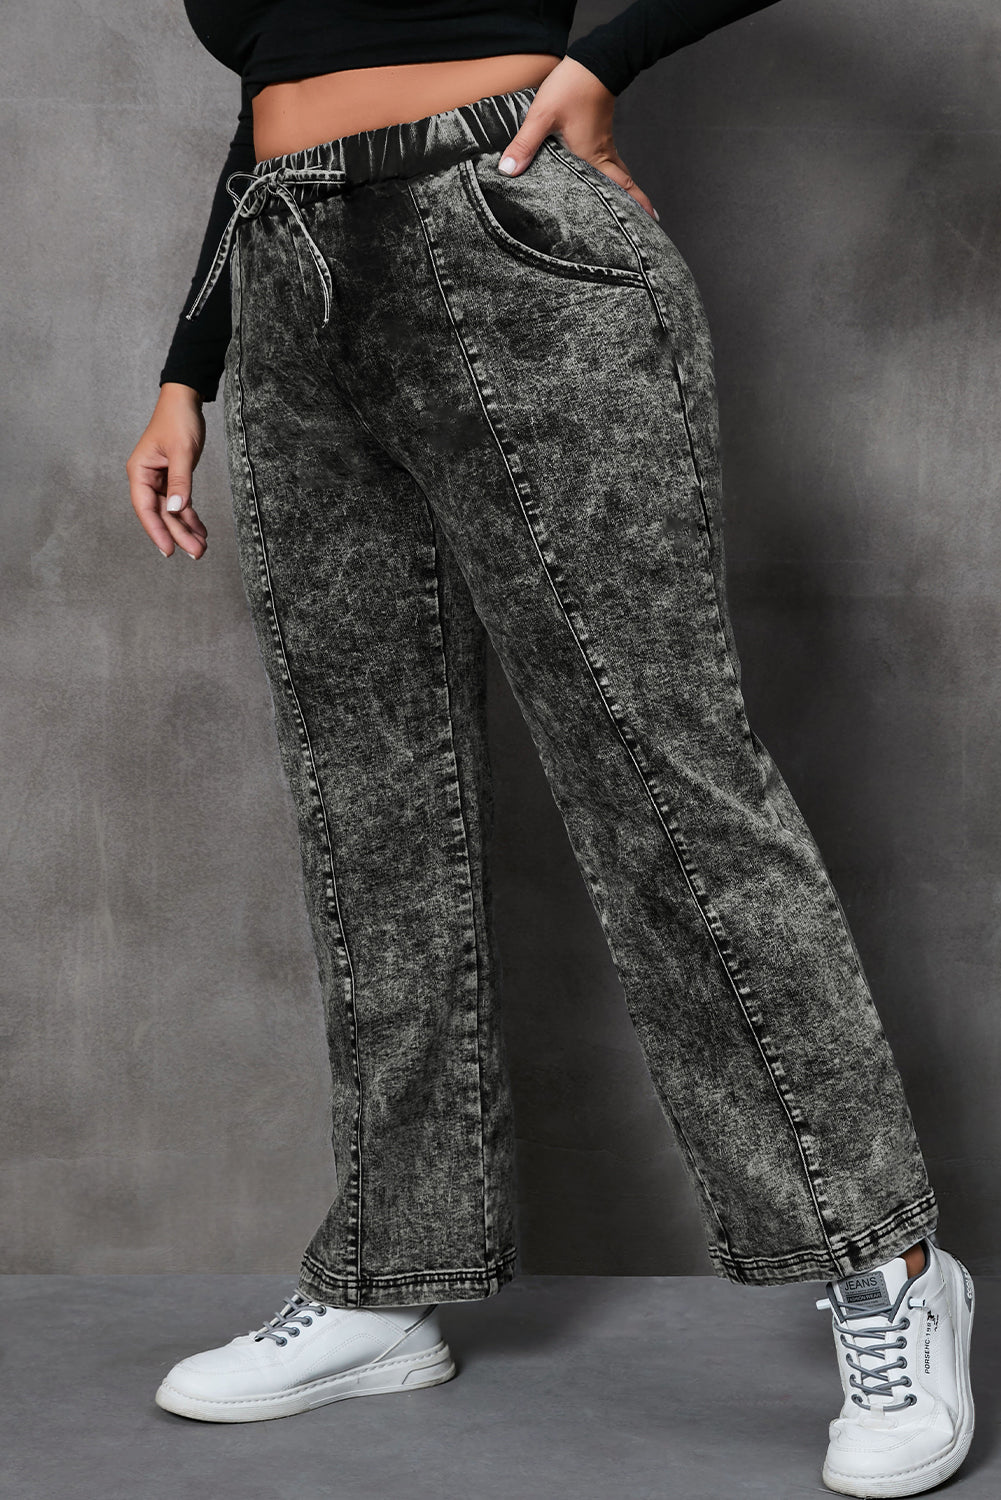 - Voluptuous (+) Plus Size Drawstring Splicing Women's Wide Leg Black Jeans - Plus Size Jeans at TFC&H Co.